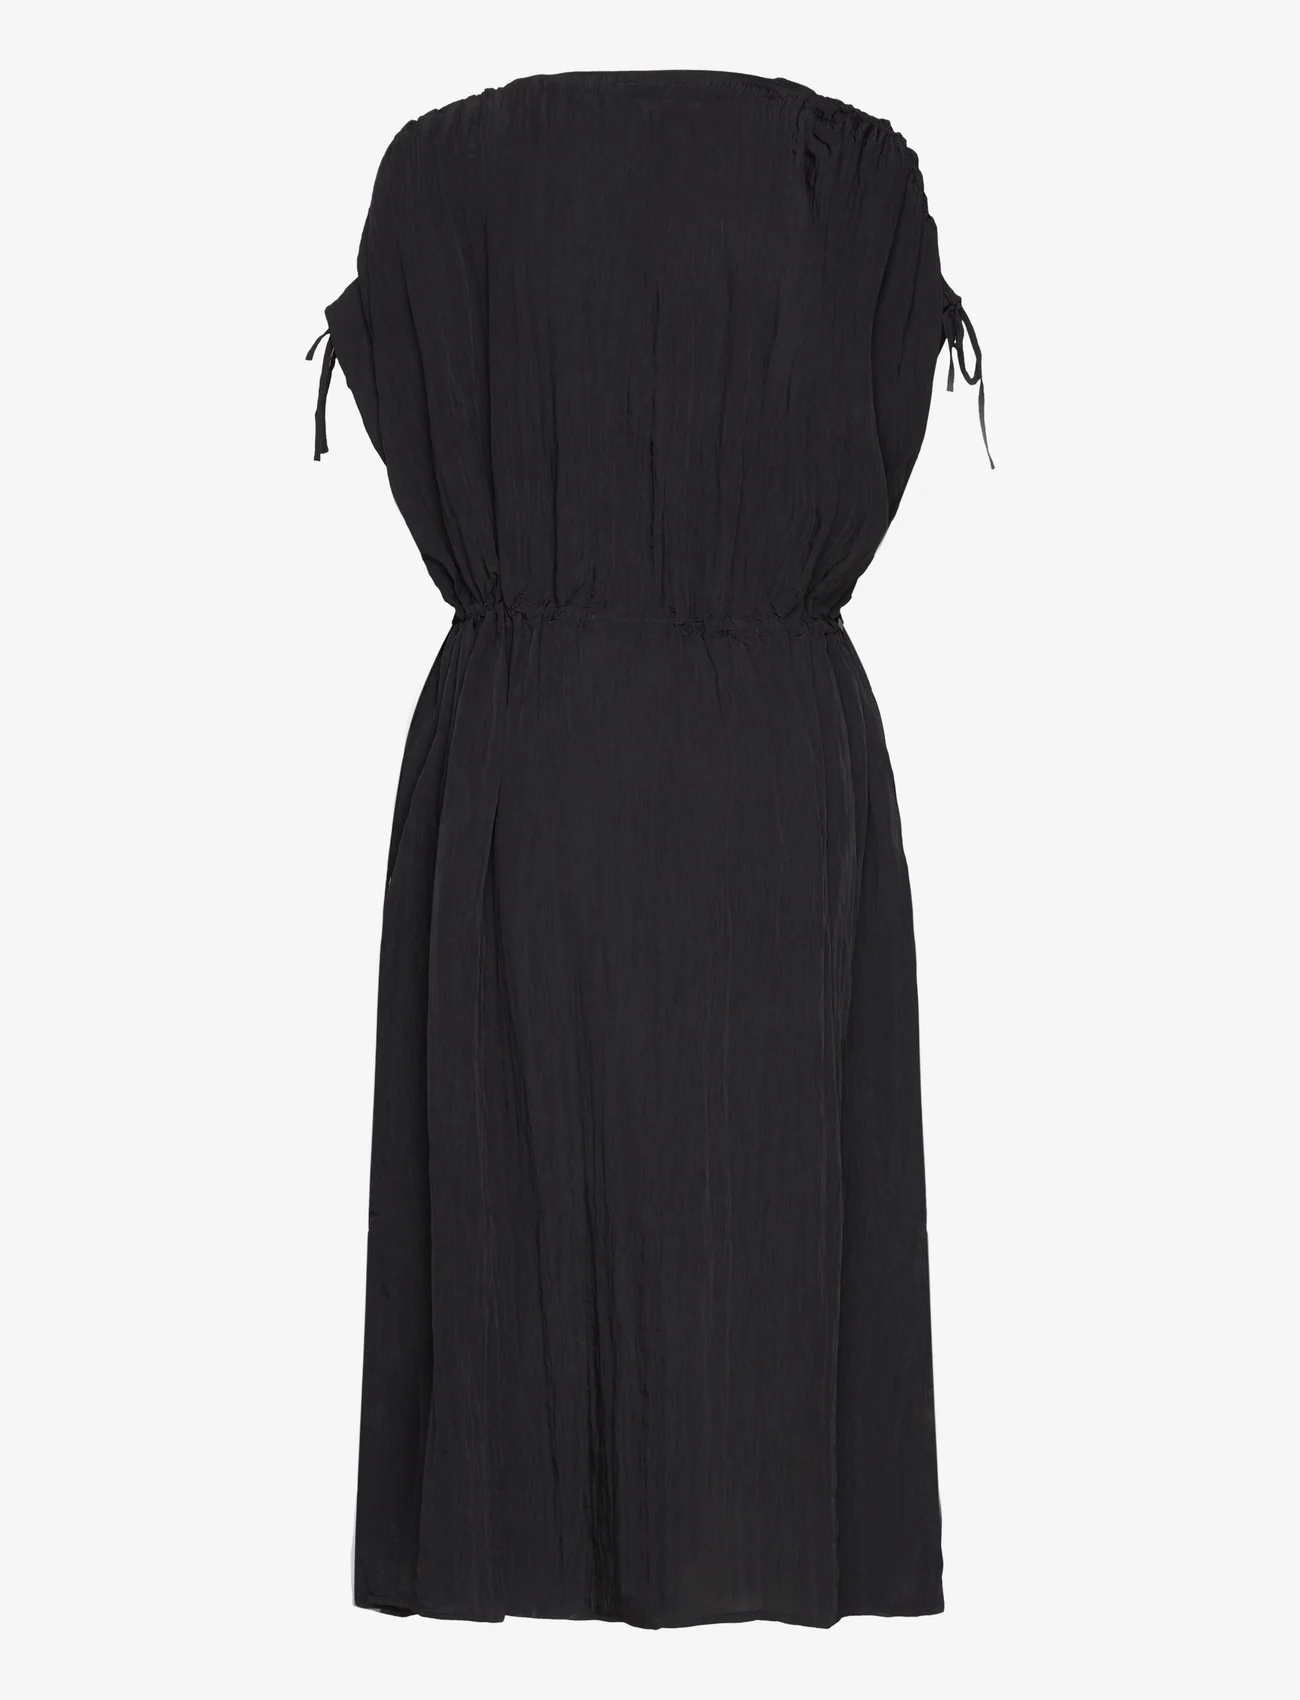 Lindex - Dress Lisa kaftan - summer dresses - black - 1